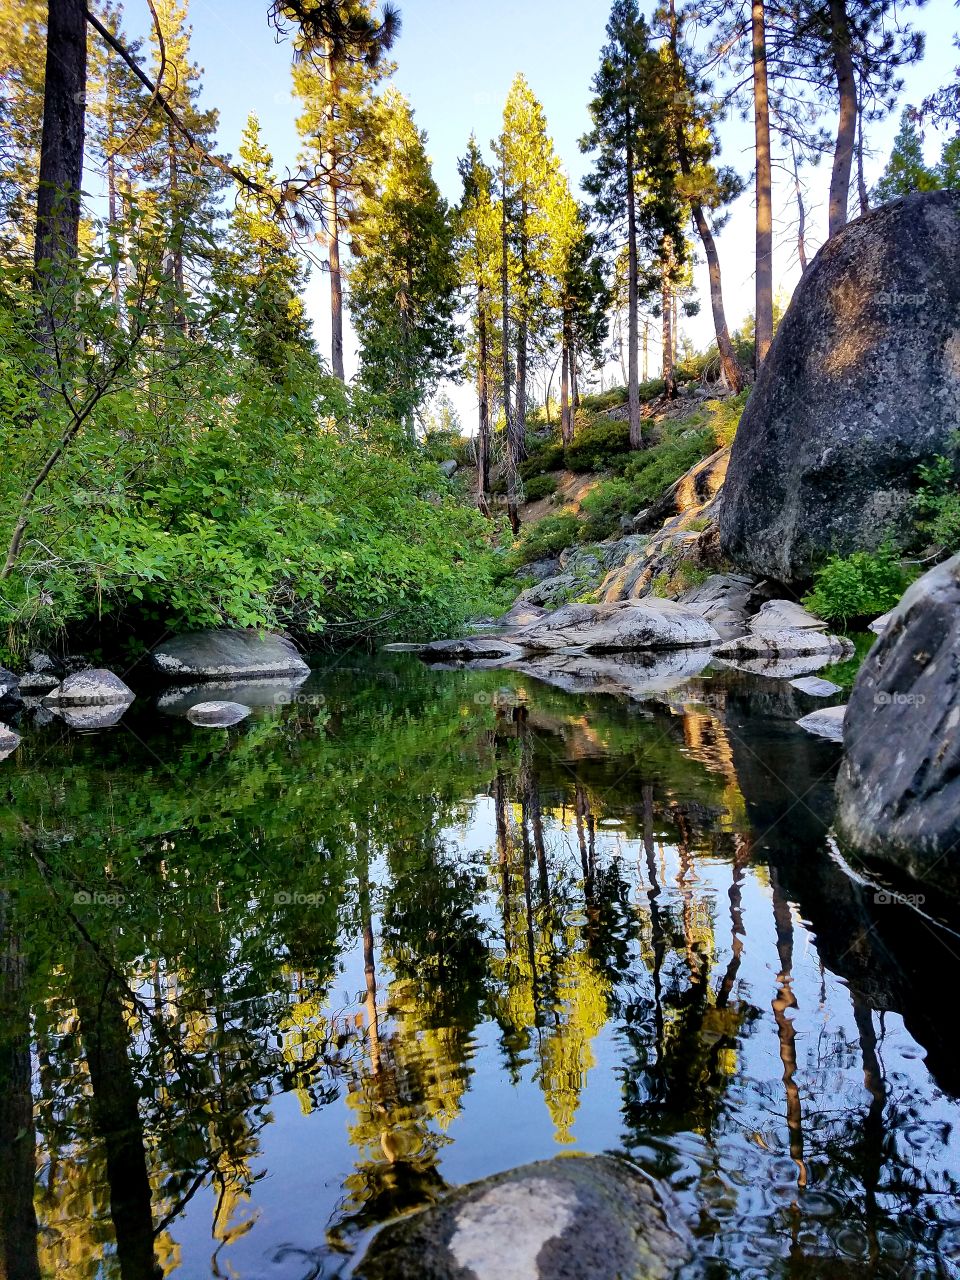 Sierra reflections